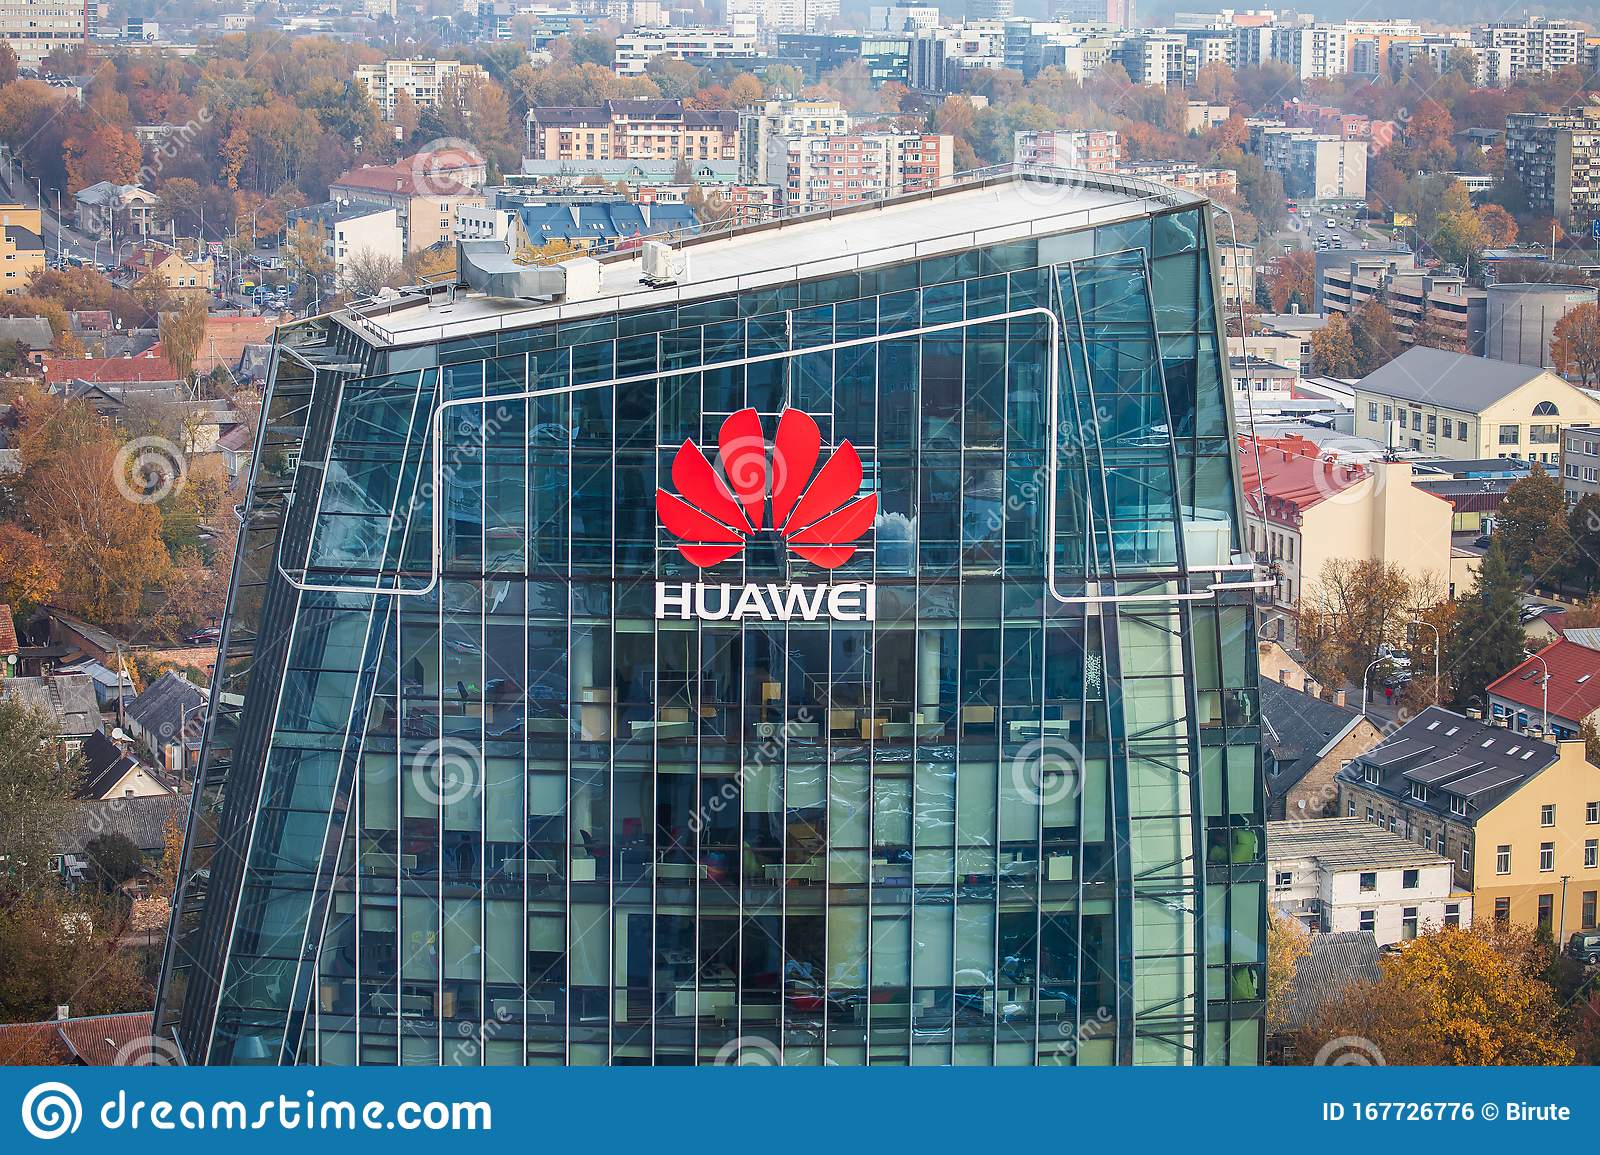 Huawei logo building